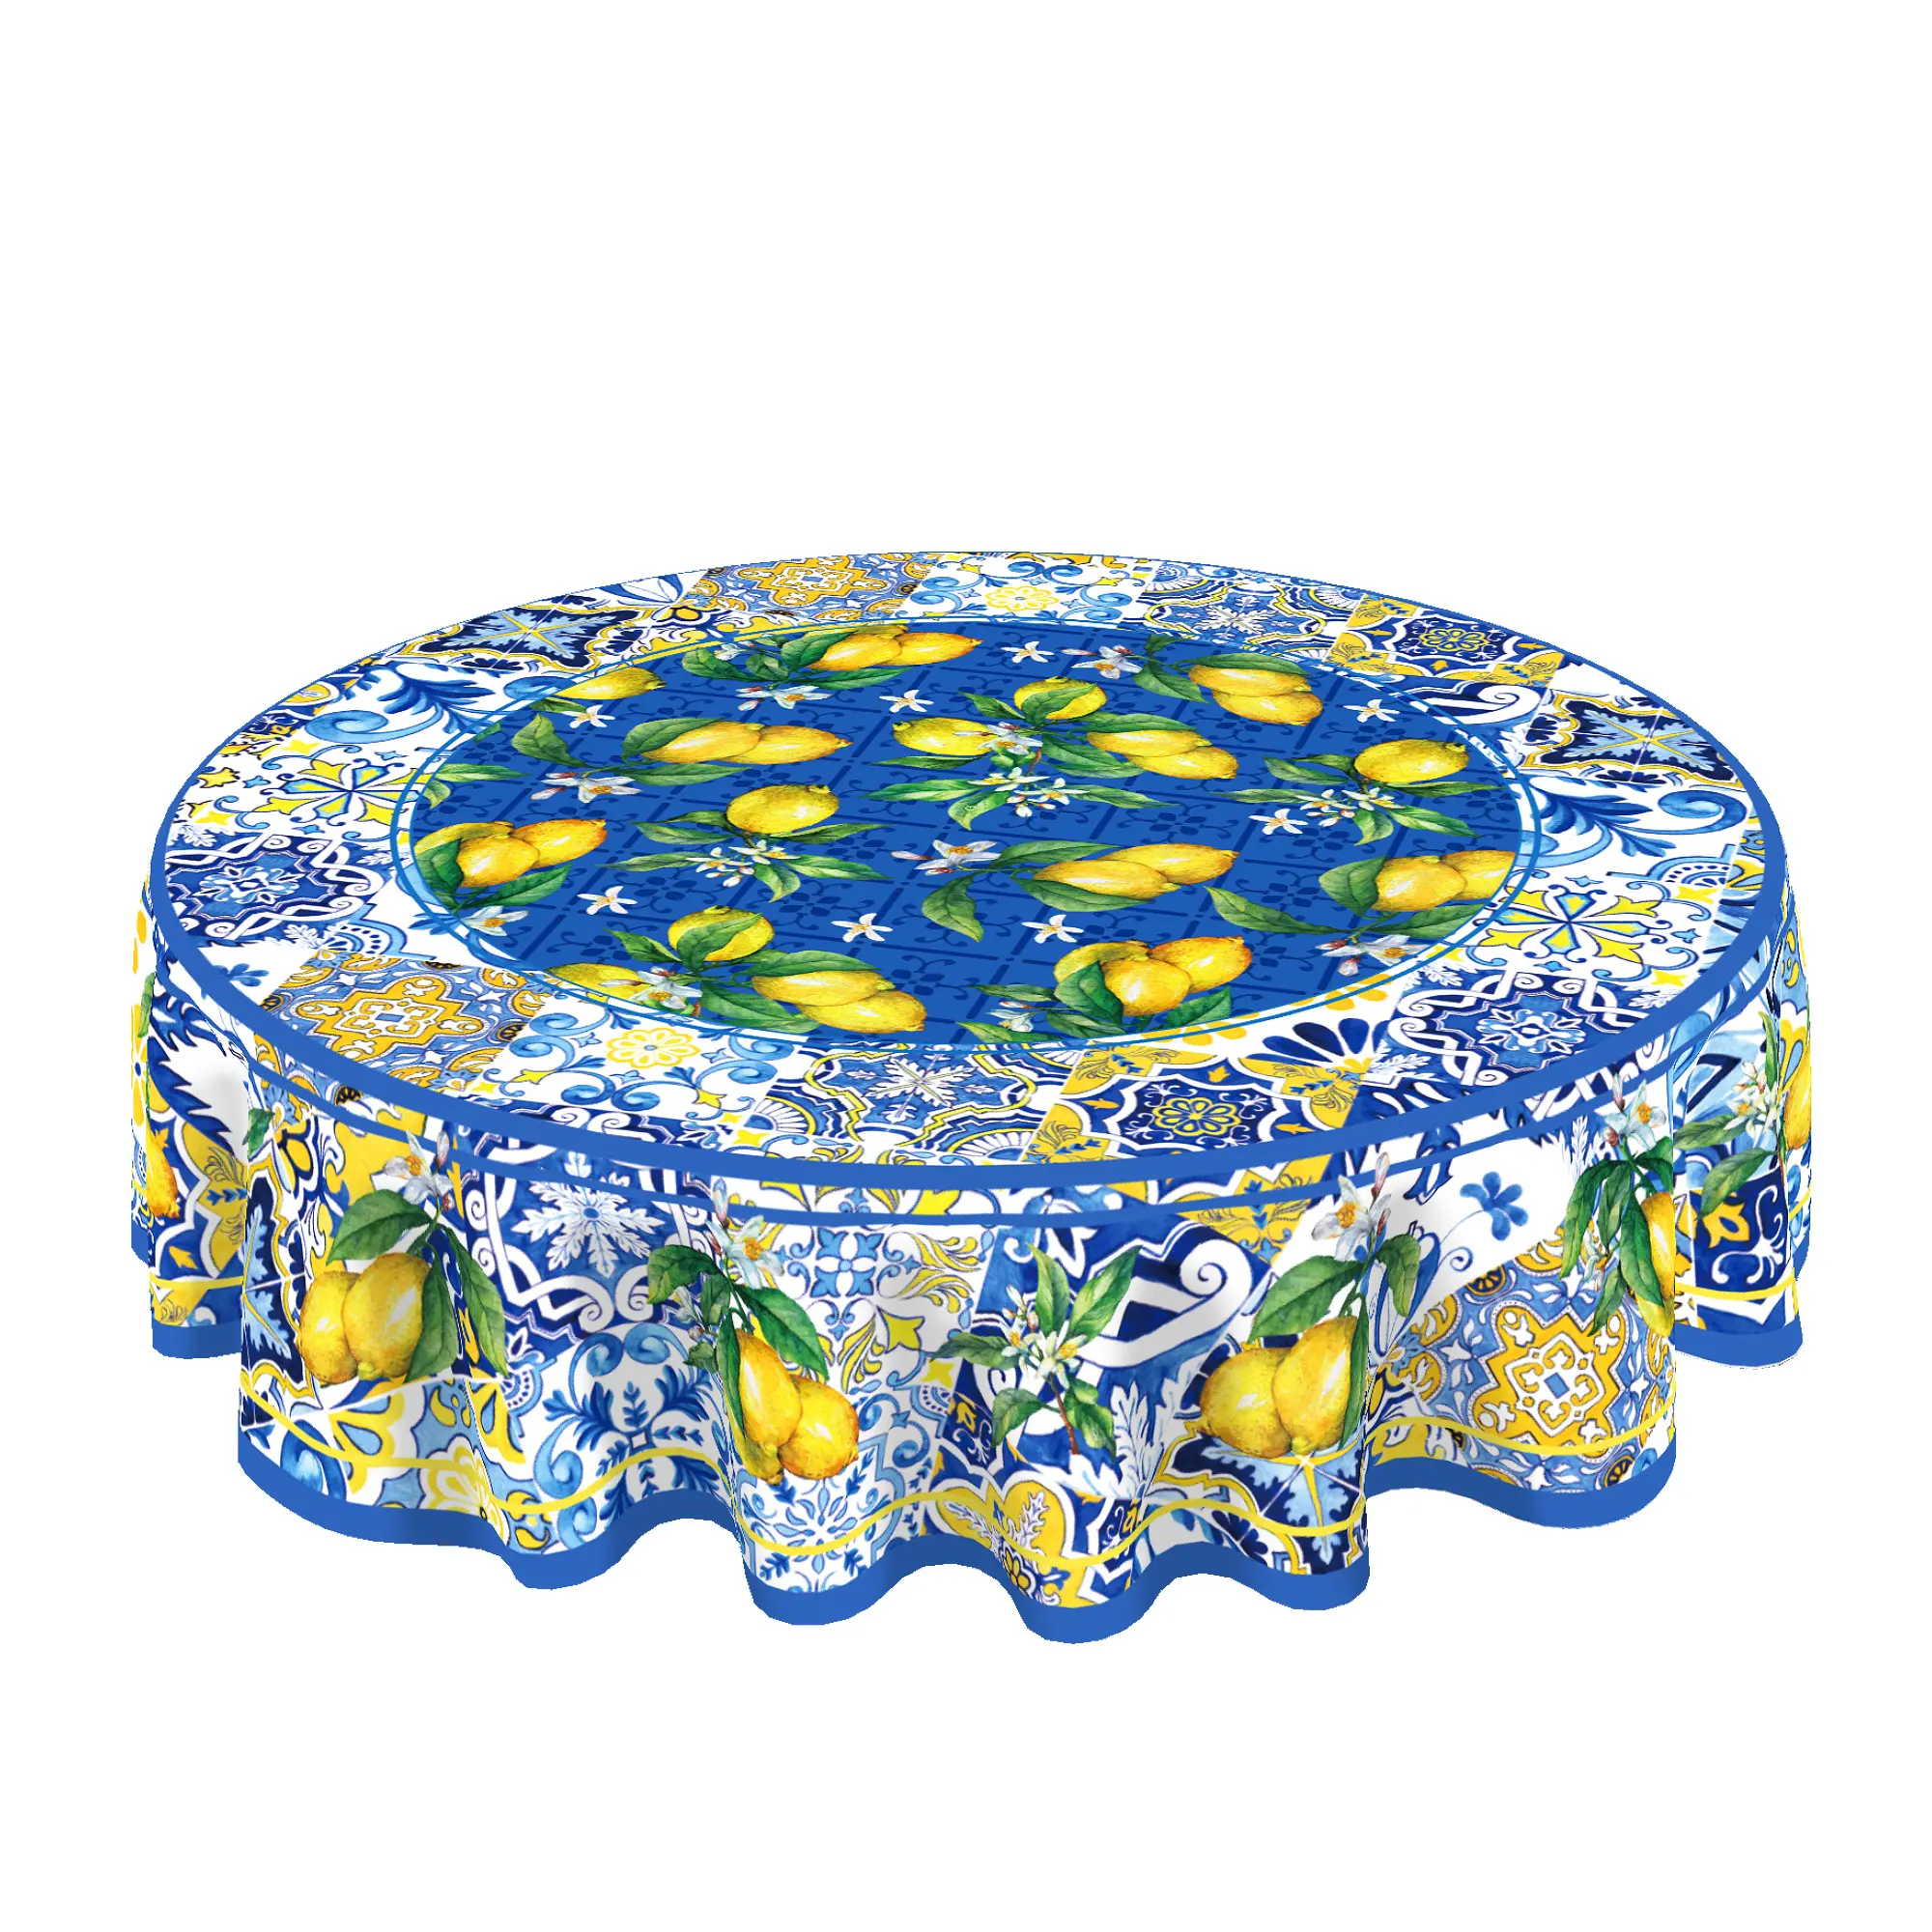 ZL002 Vintage giallo limone rotondo tovaglia monouso in poliestere tessuto tovaglia per feste decorazione tavola forniture